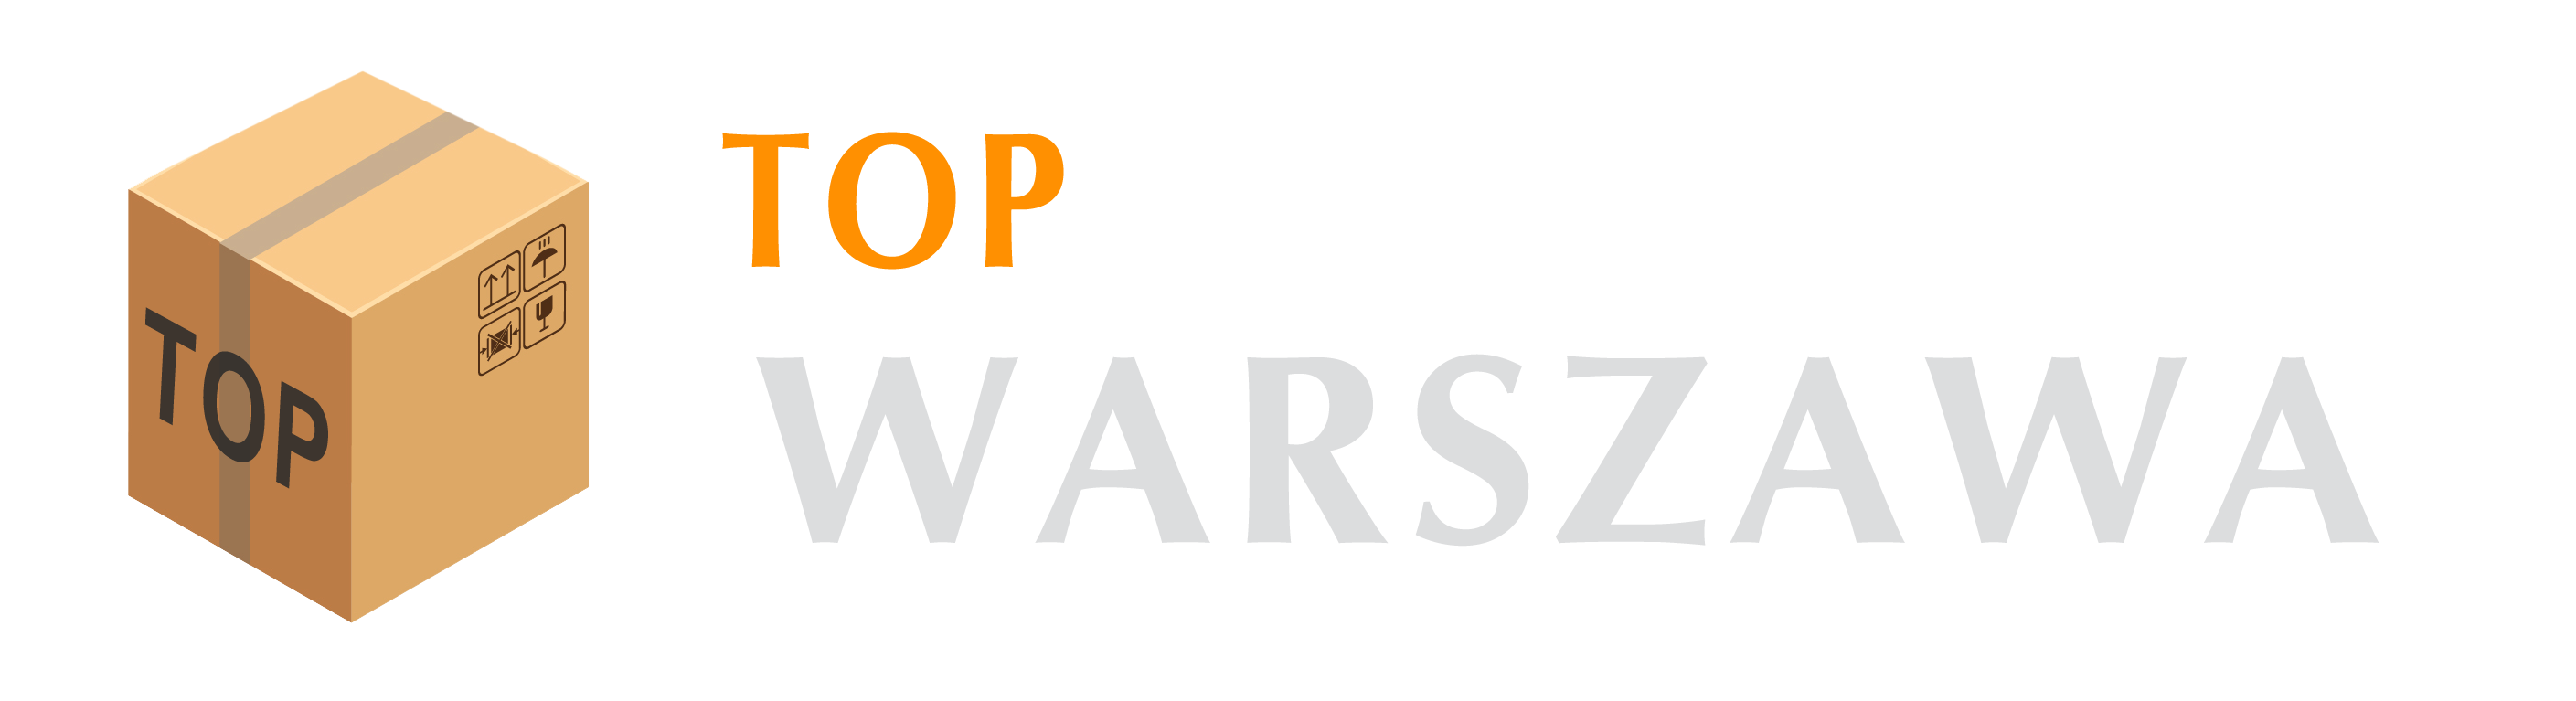 Top Przeprowadzki Warszawa